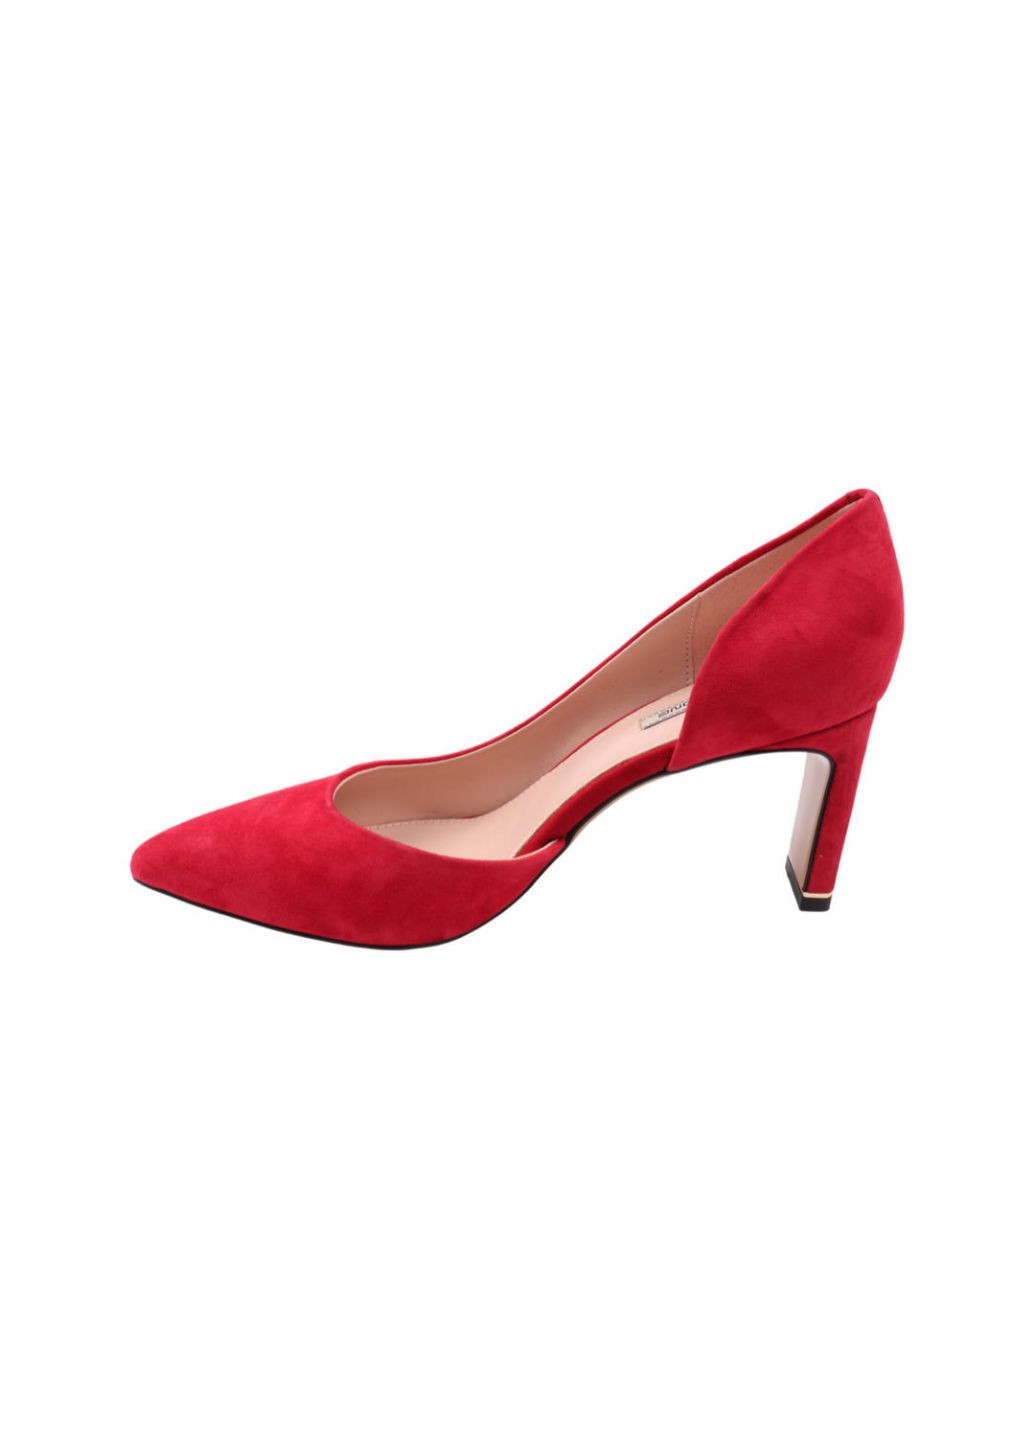 Туфли женские красные натуральная замша Anemone